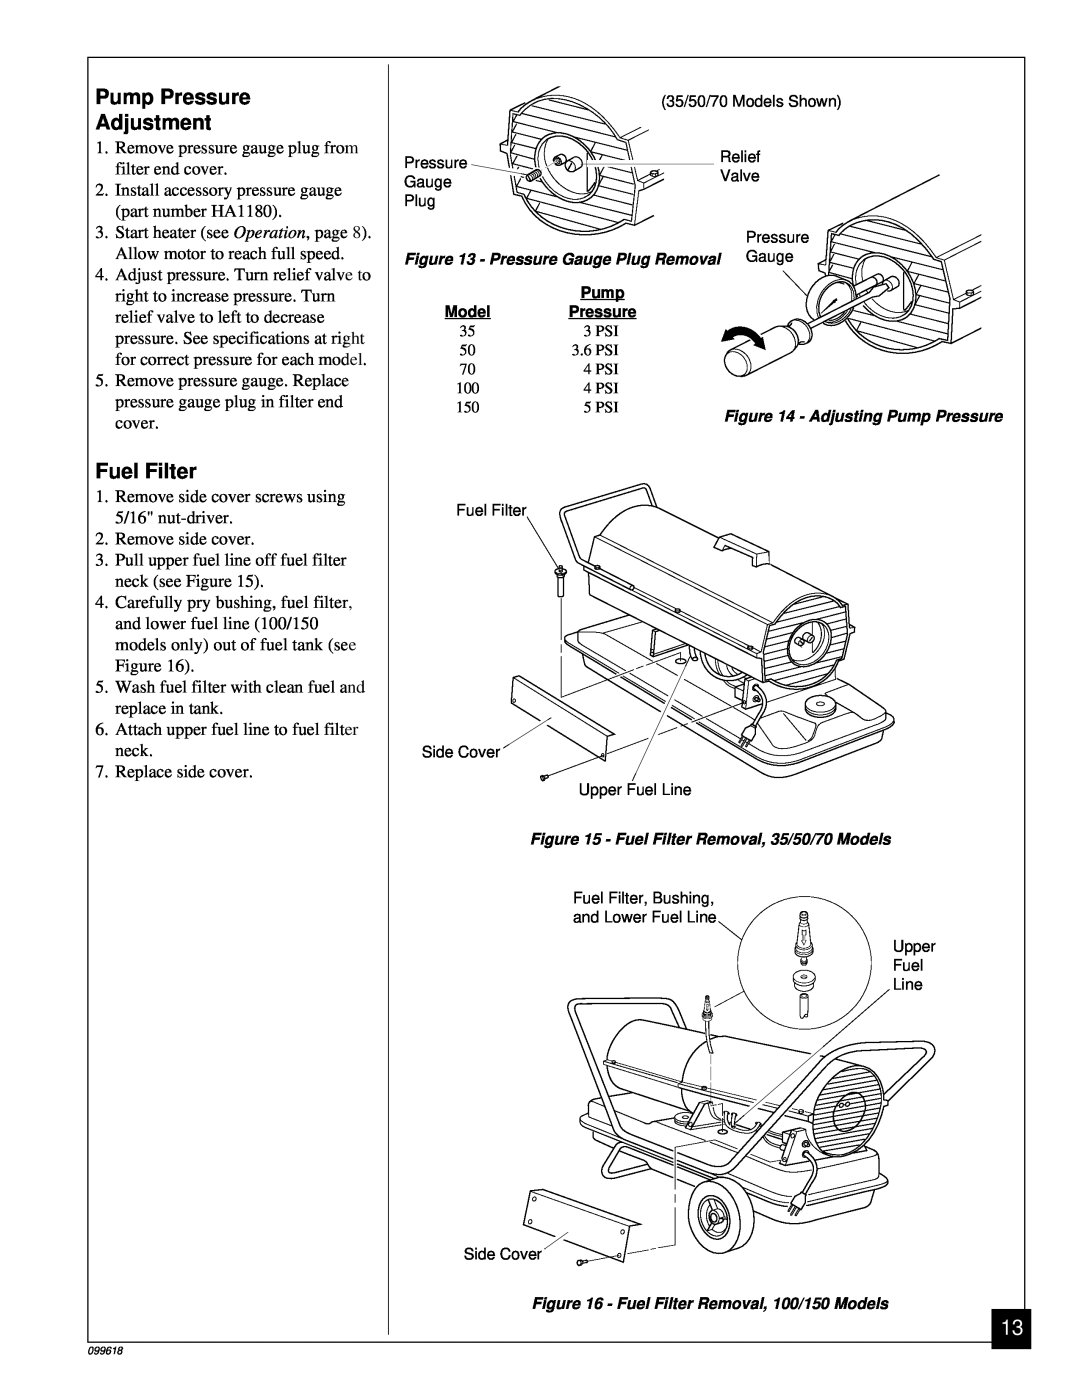 Desa 50 owner manual Pump Pressure Adjustment, Fuel Filter 